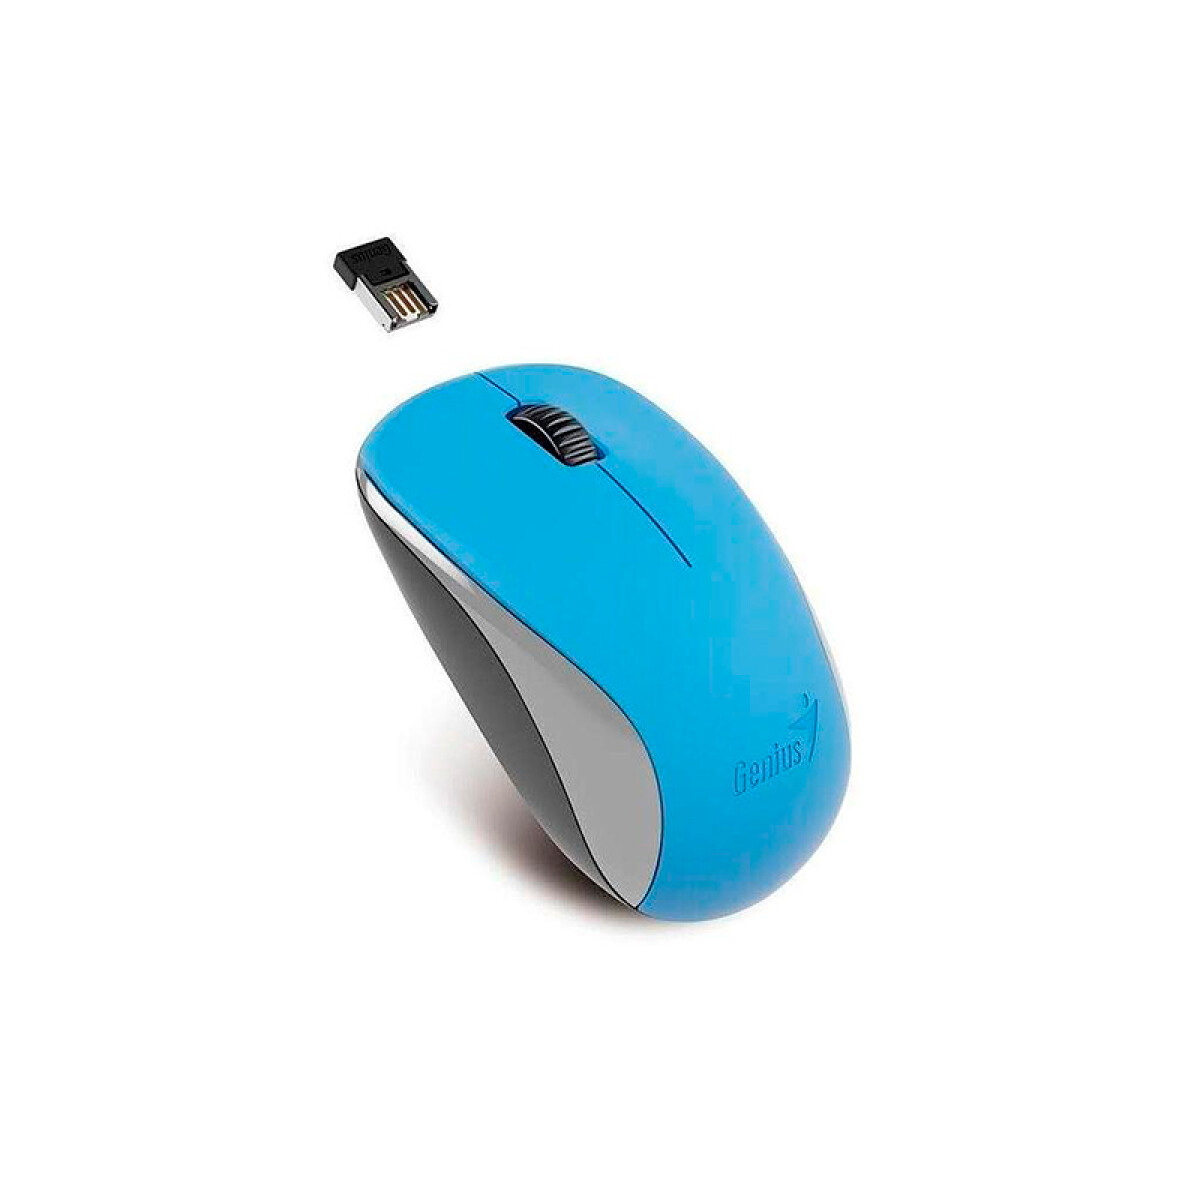 Mouse inalámbrico Genius NX-7000 USB 